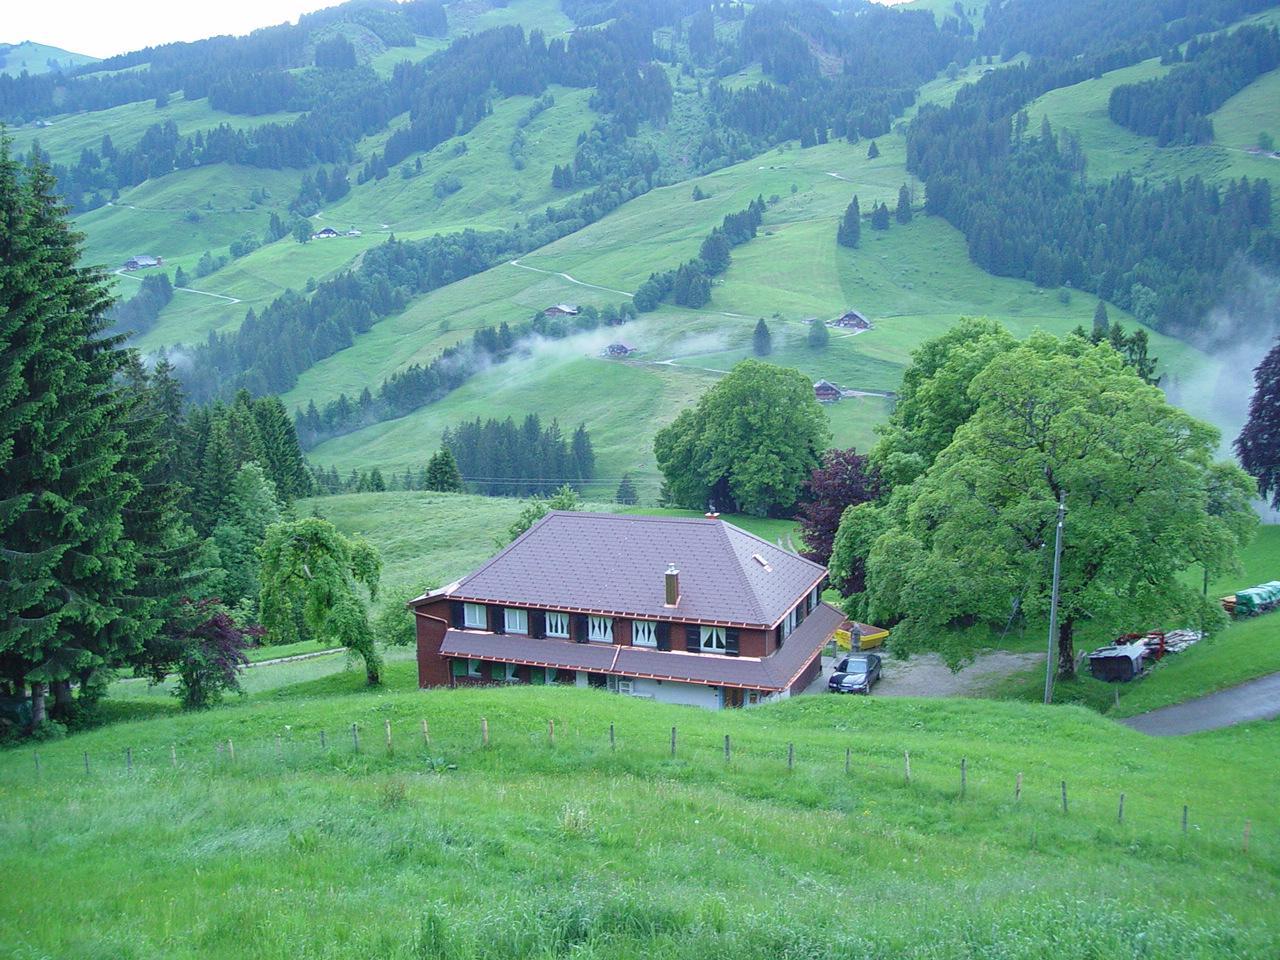 Wilerbädli Ferienhaus in der Schweiz